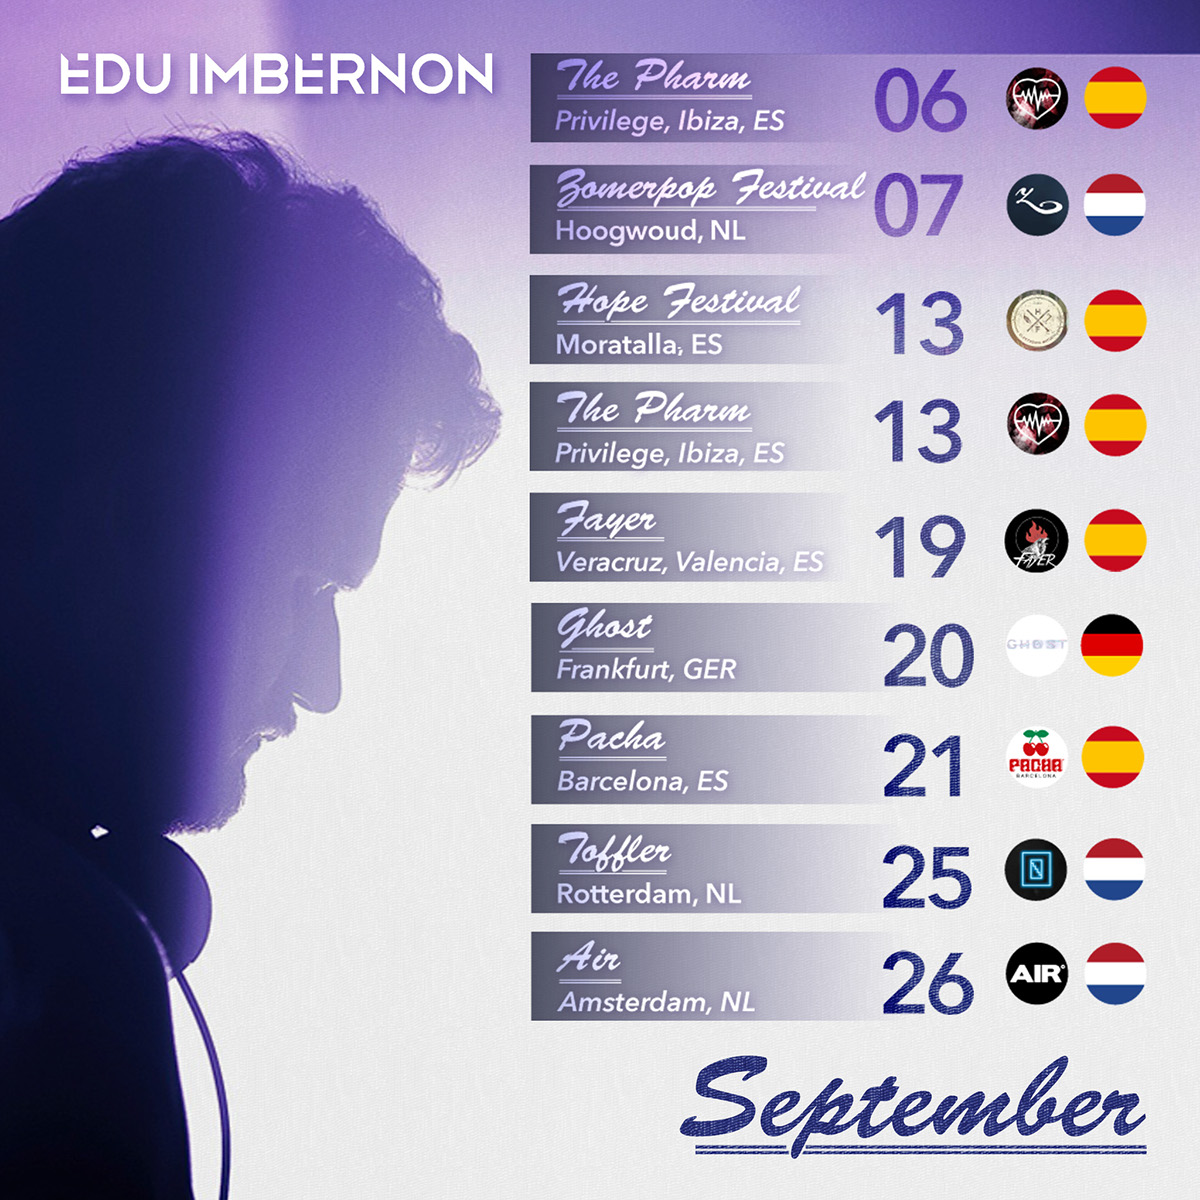 Edu Imbernon tour dates graphic design cover